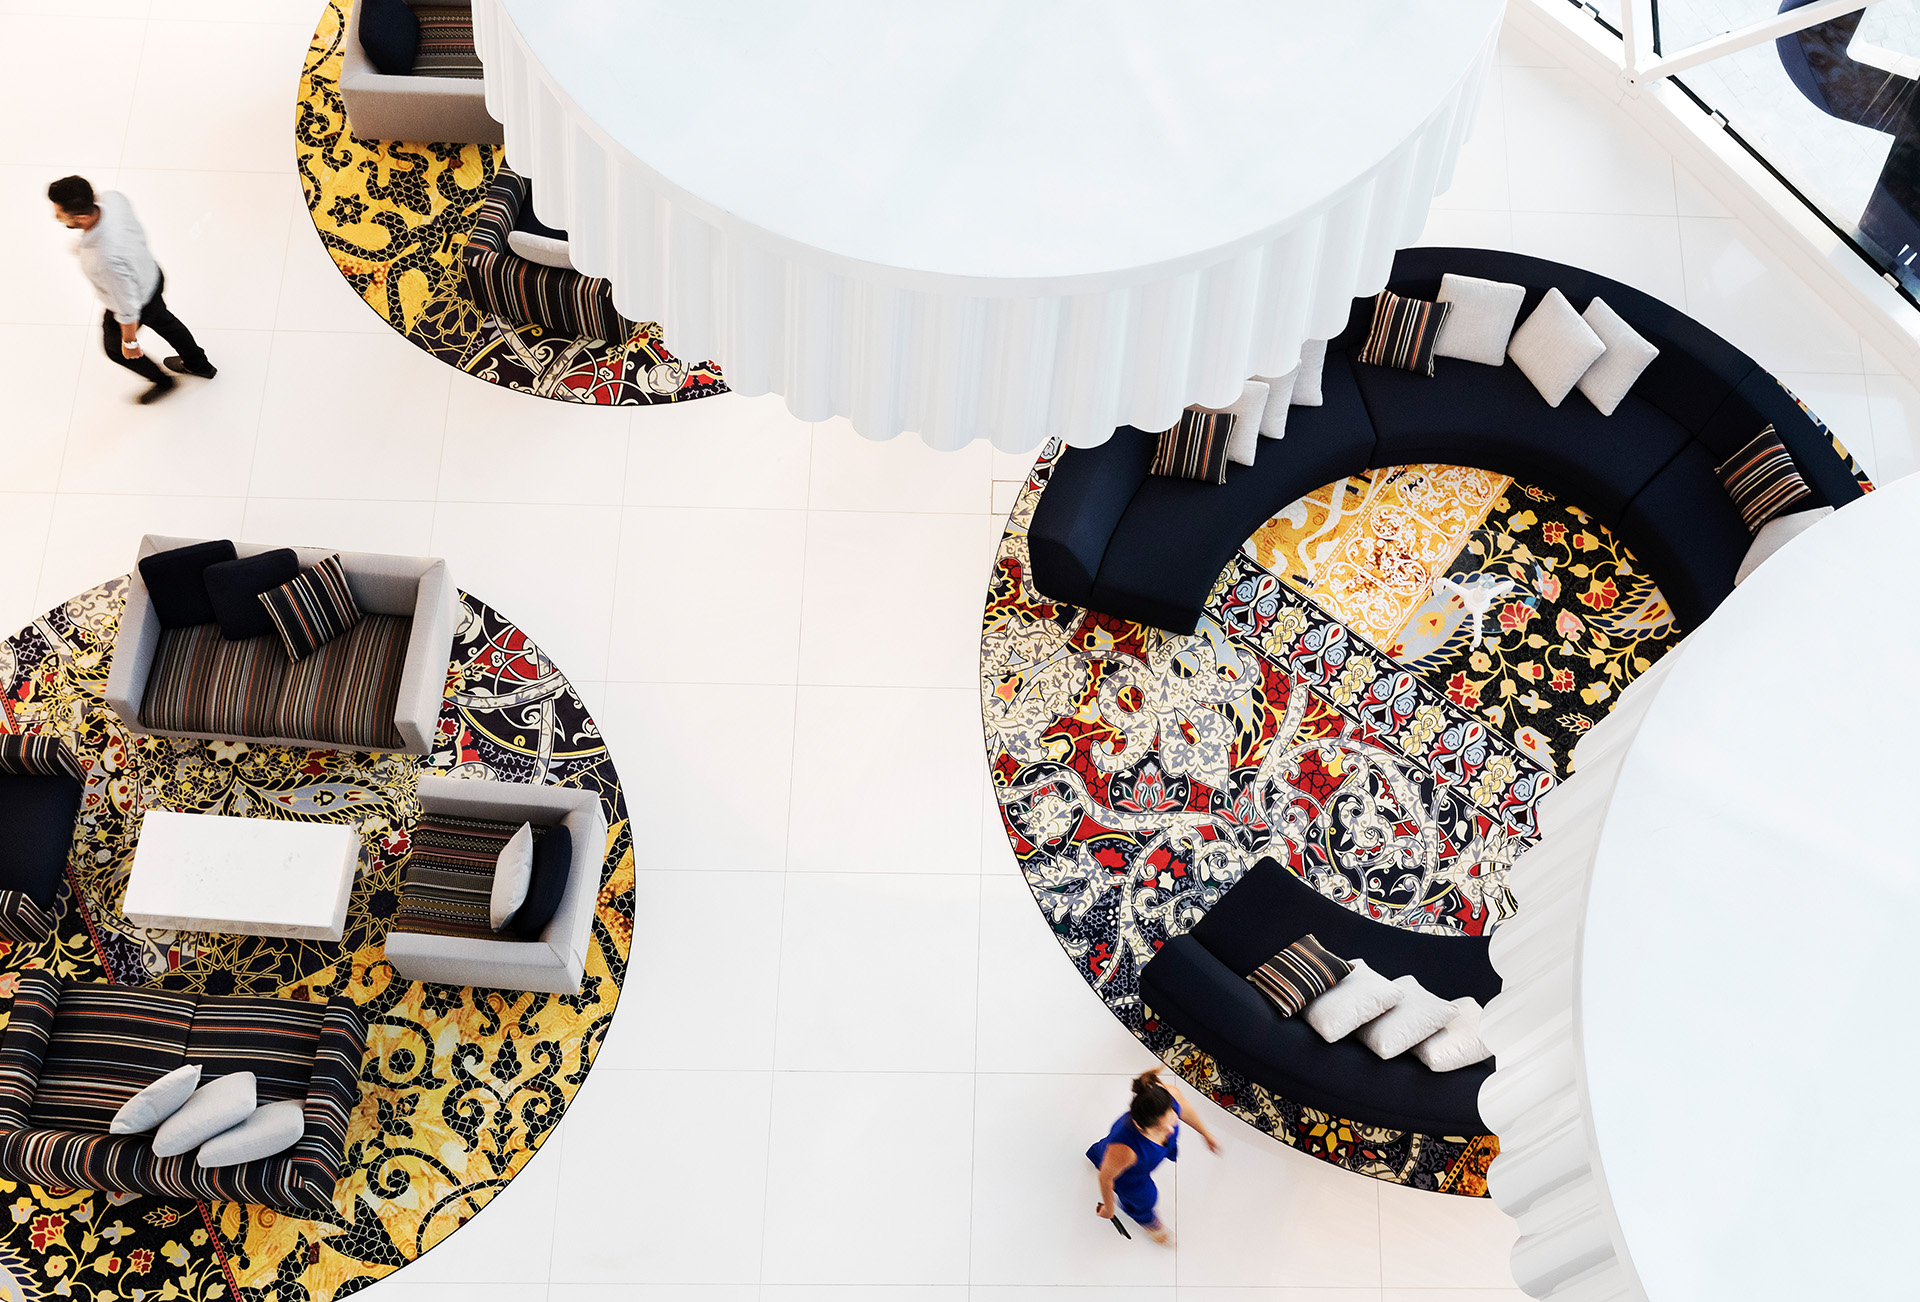 Una vista aérea del vestíbulo de un hotel con islas redondas y coloridas para sentarse.